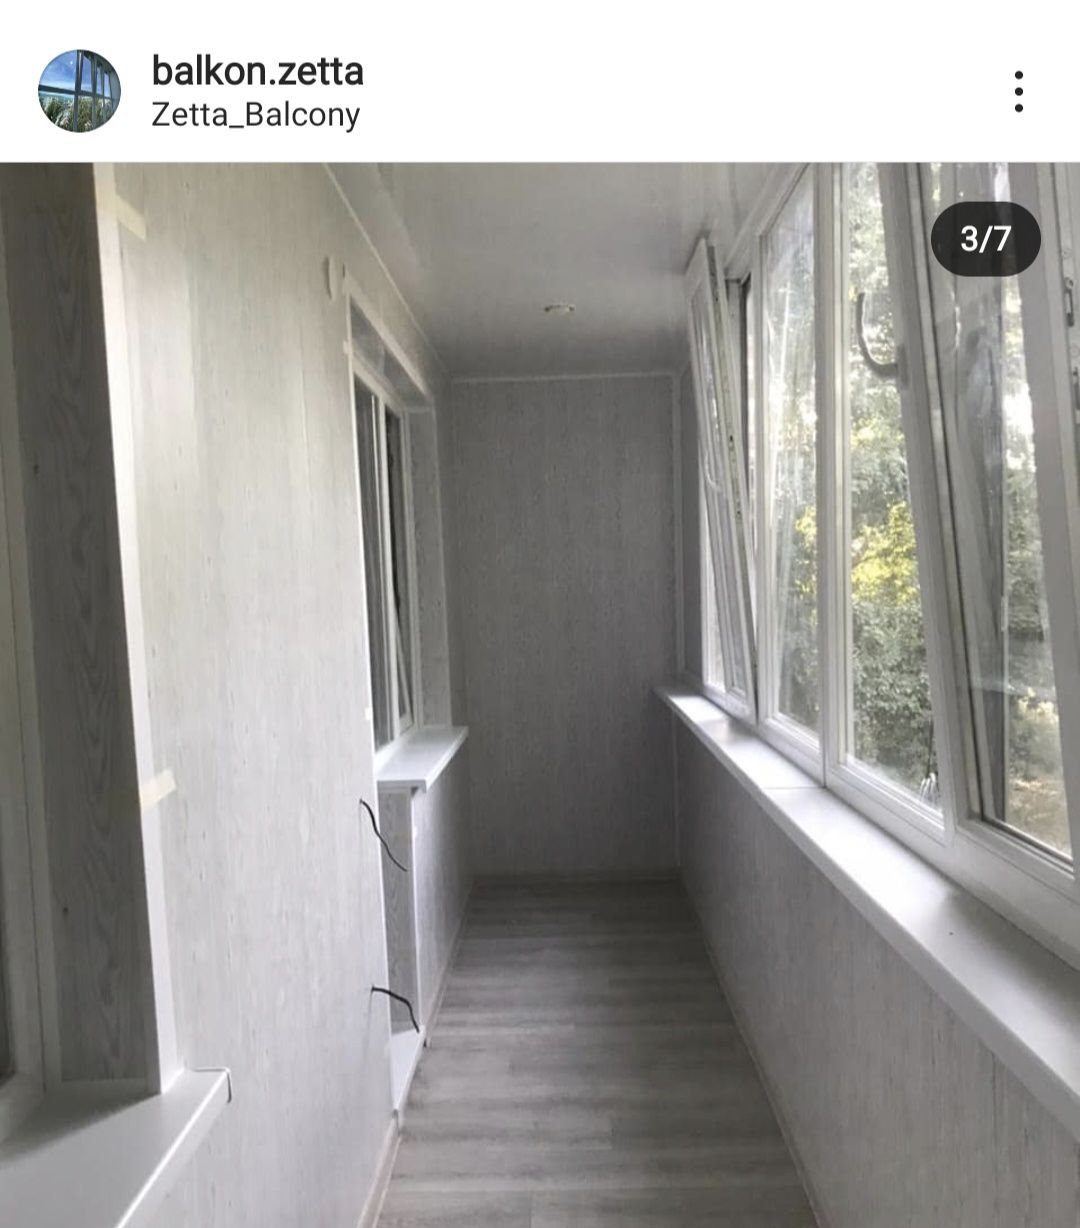 Балкон Zetta под ключ !!!